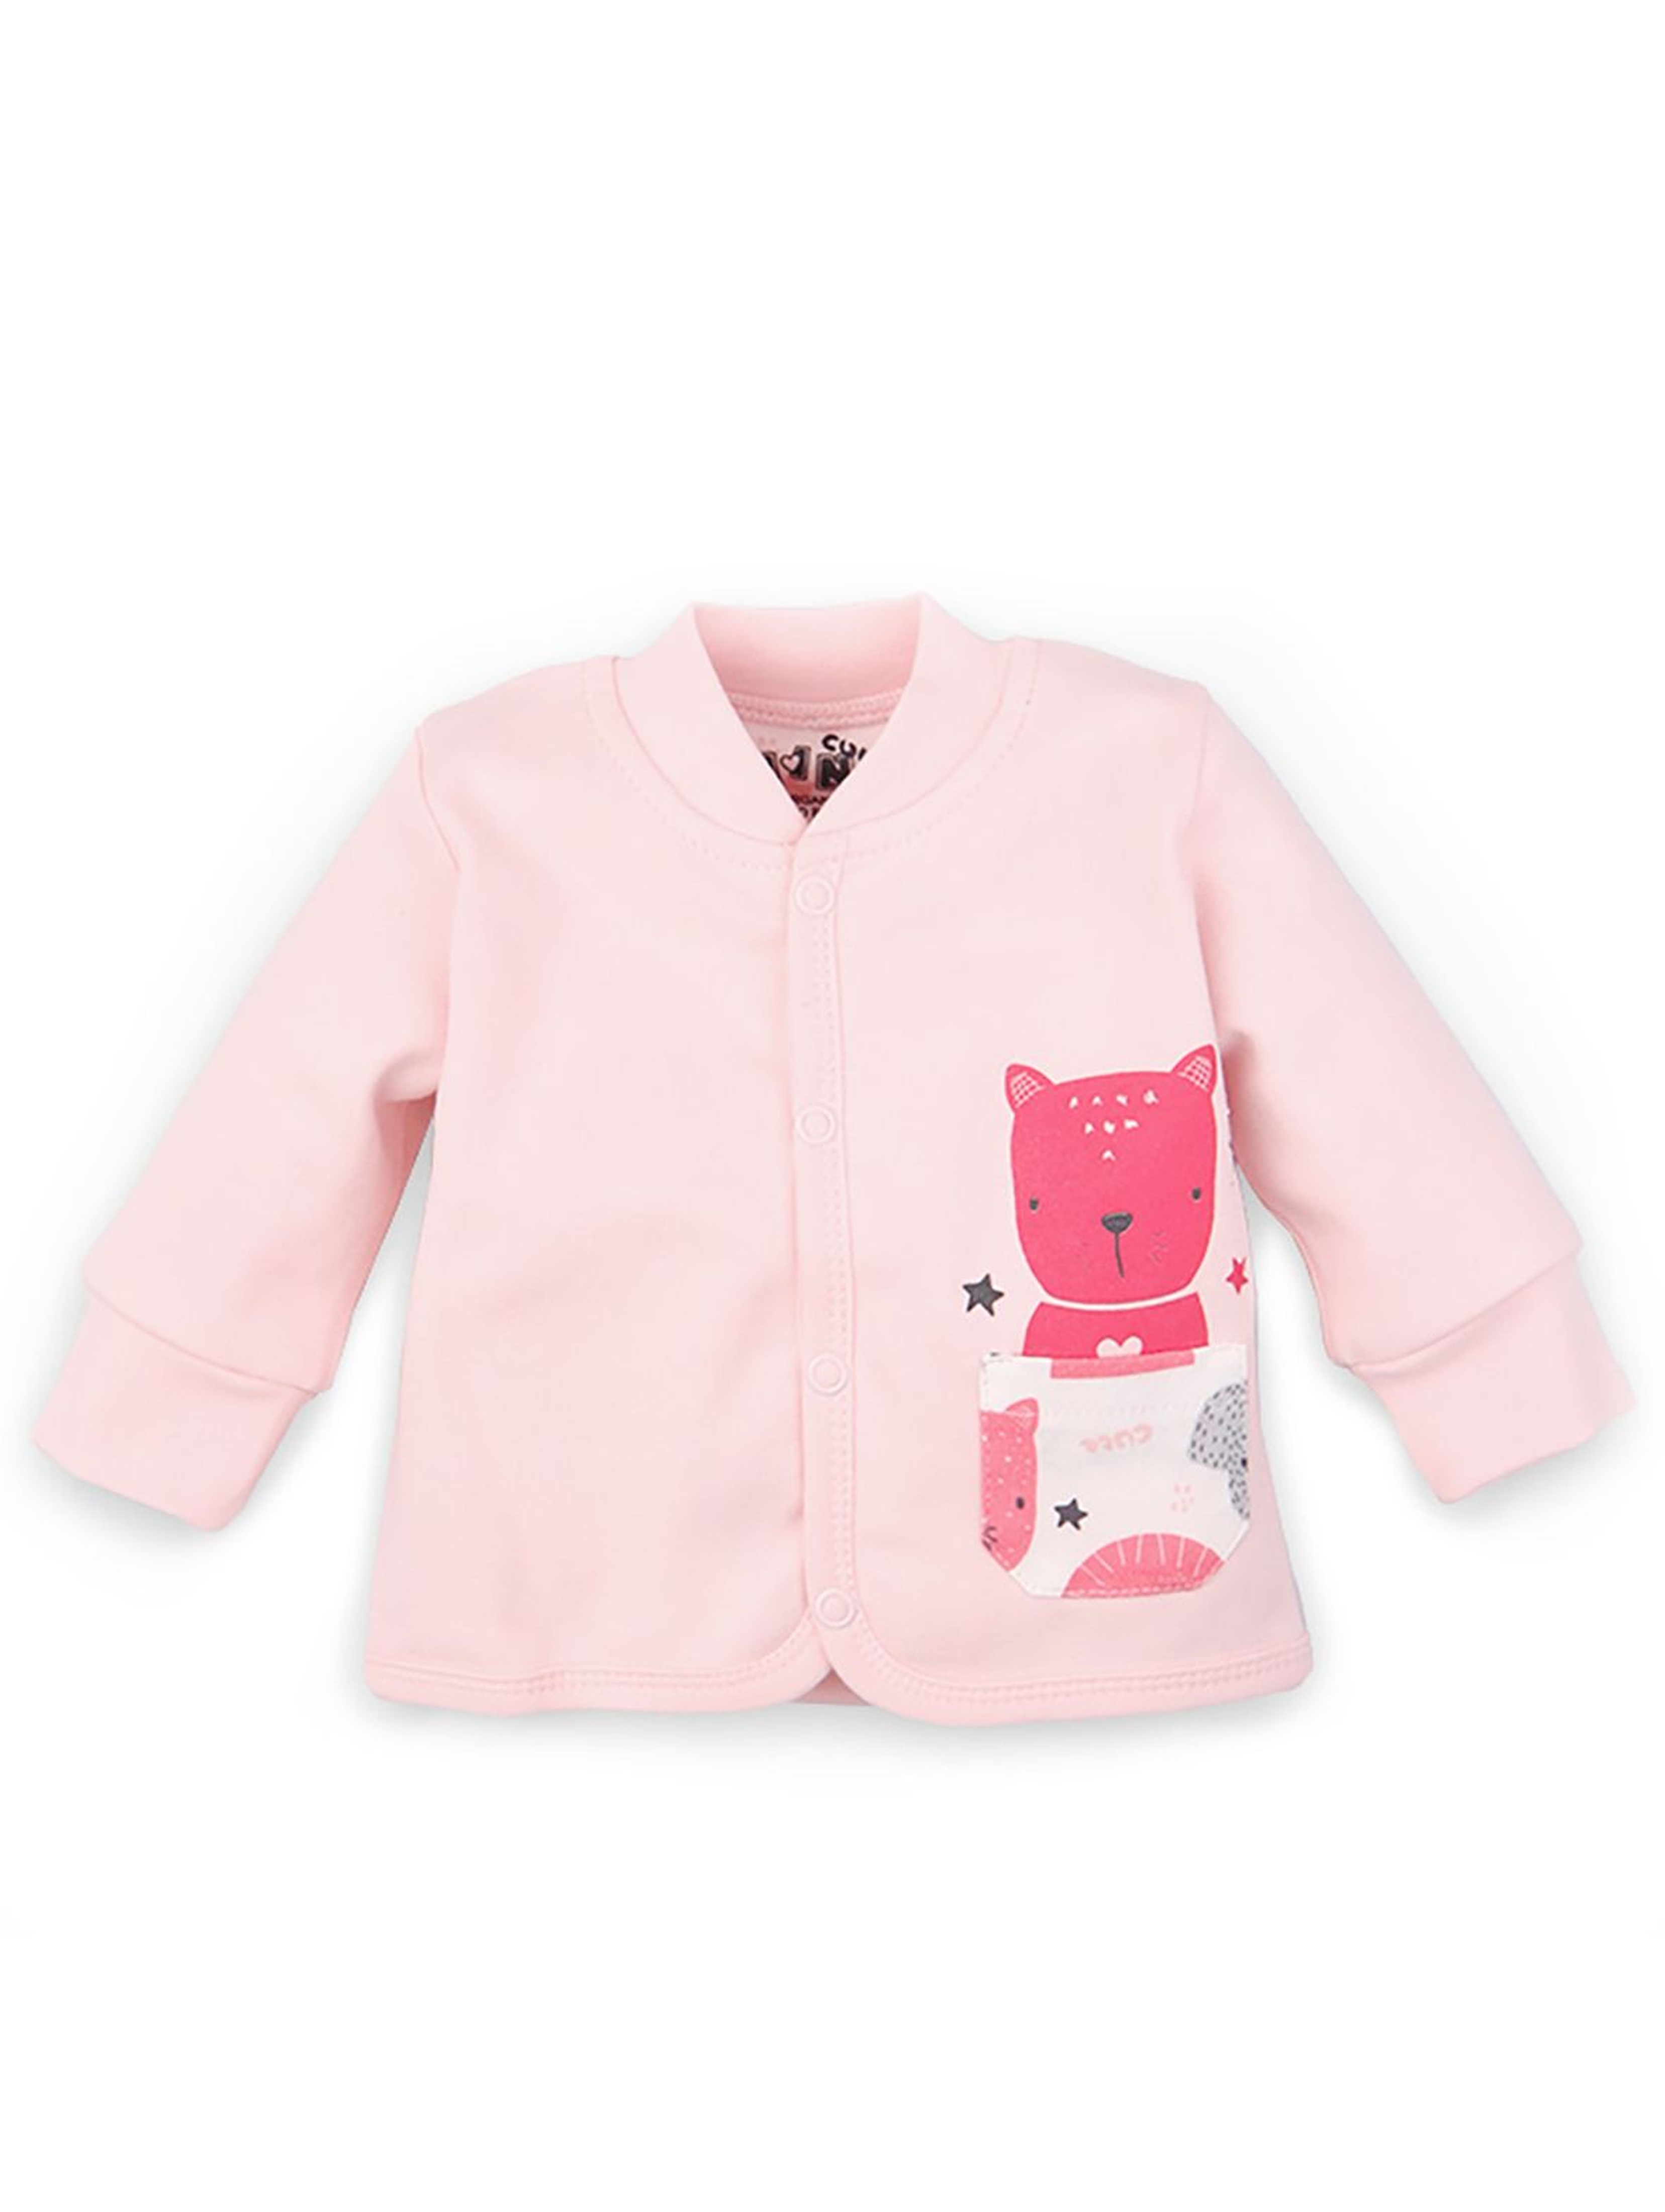 Bluza niemowlęca z bawełny organicznej dla dziewczynki - różowa